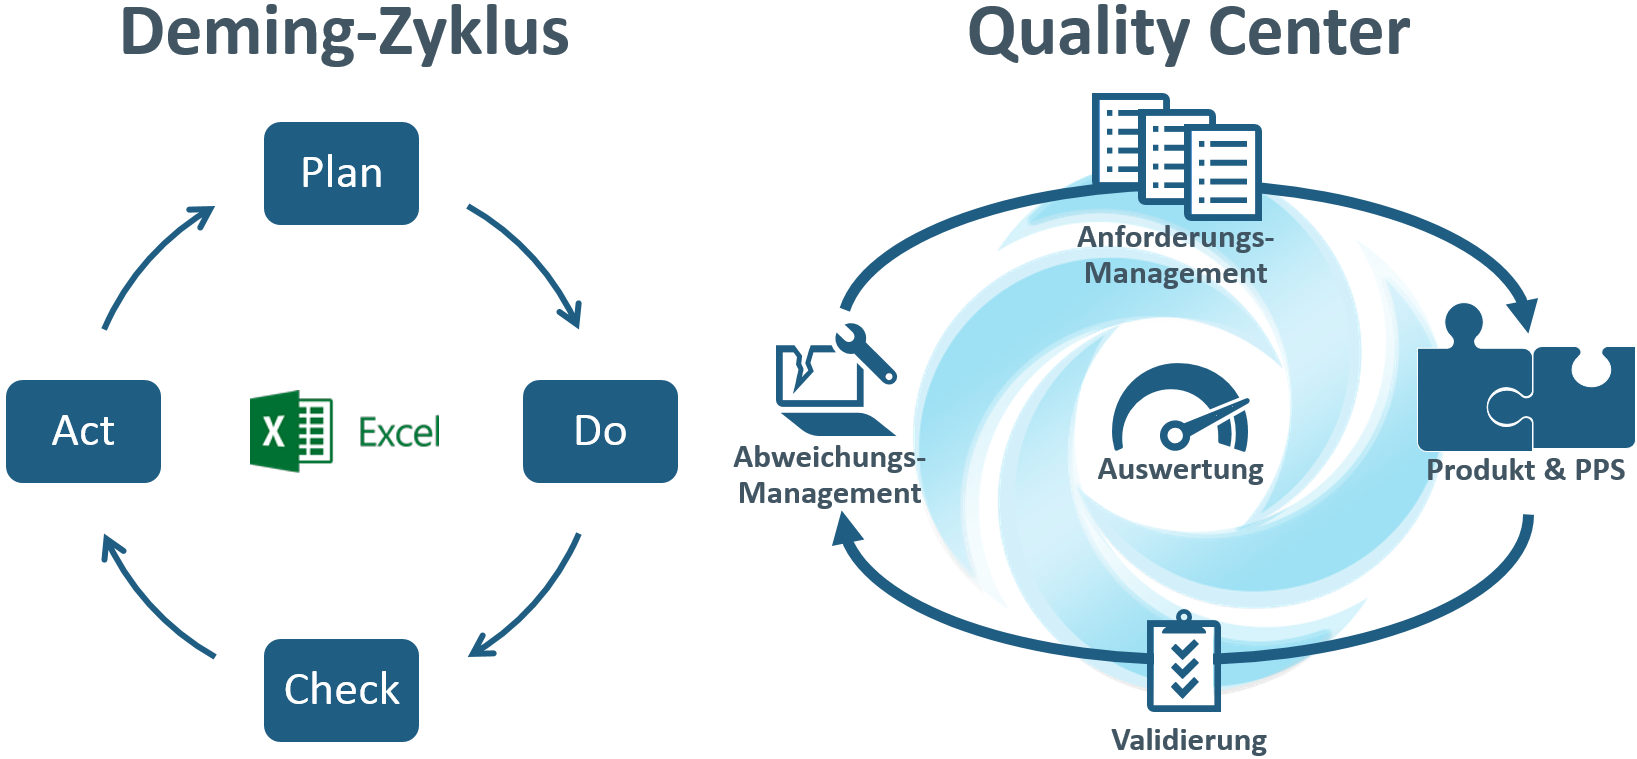 Quality Center – ein ganzheitliches Qualitätssicherungssystem